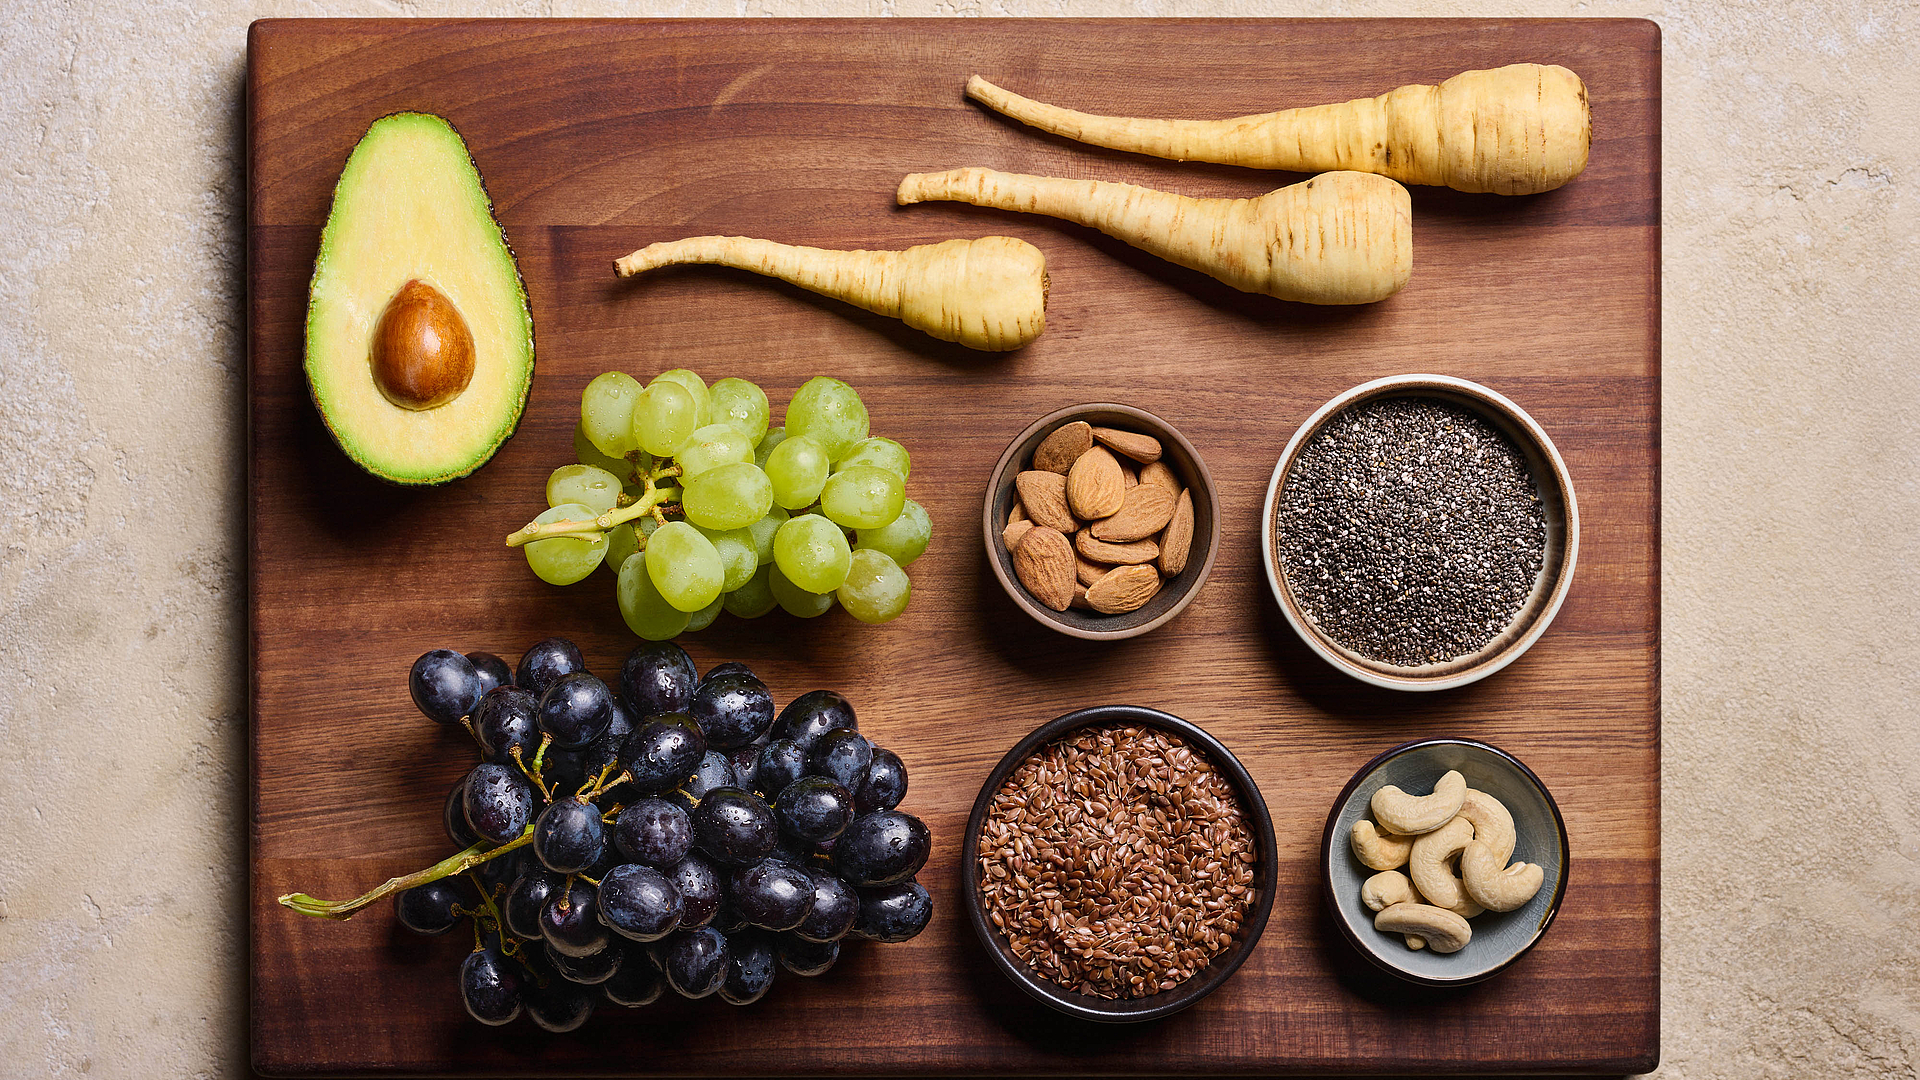 Mangiare vegano a gennaio: 5 suggerimenti per un Veganuary salutare e stuzzicante  